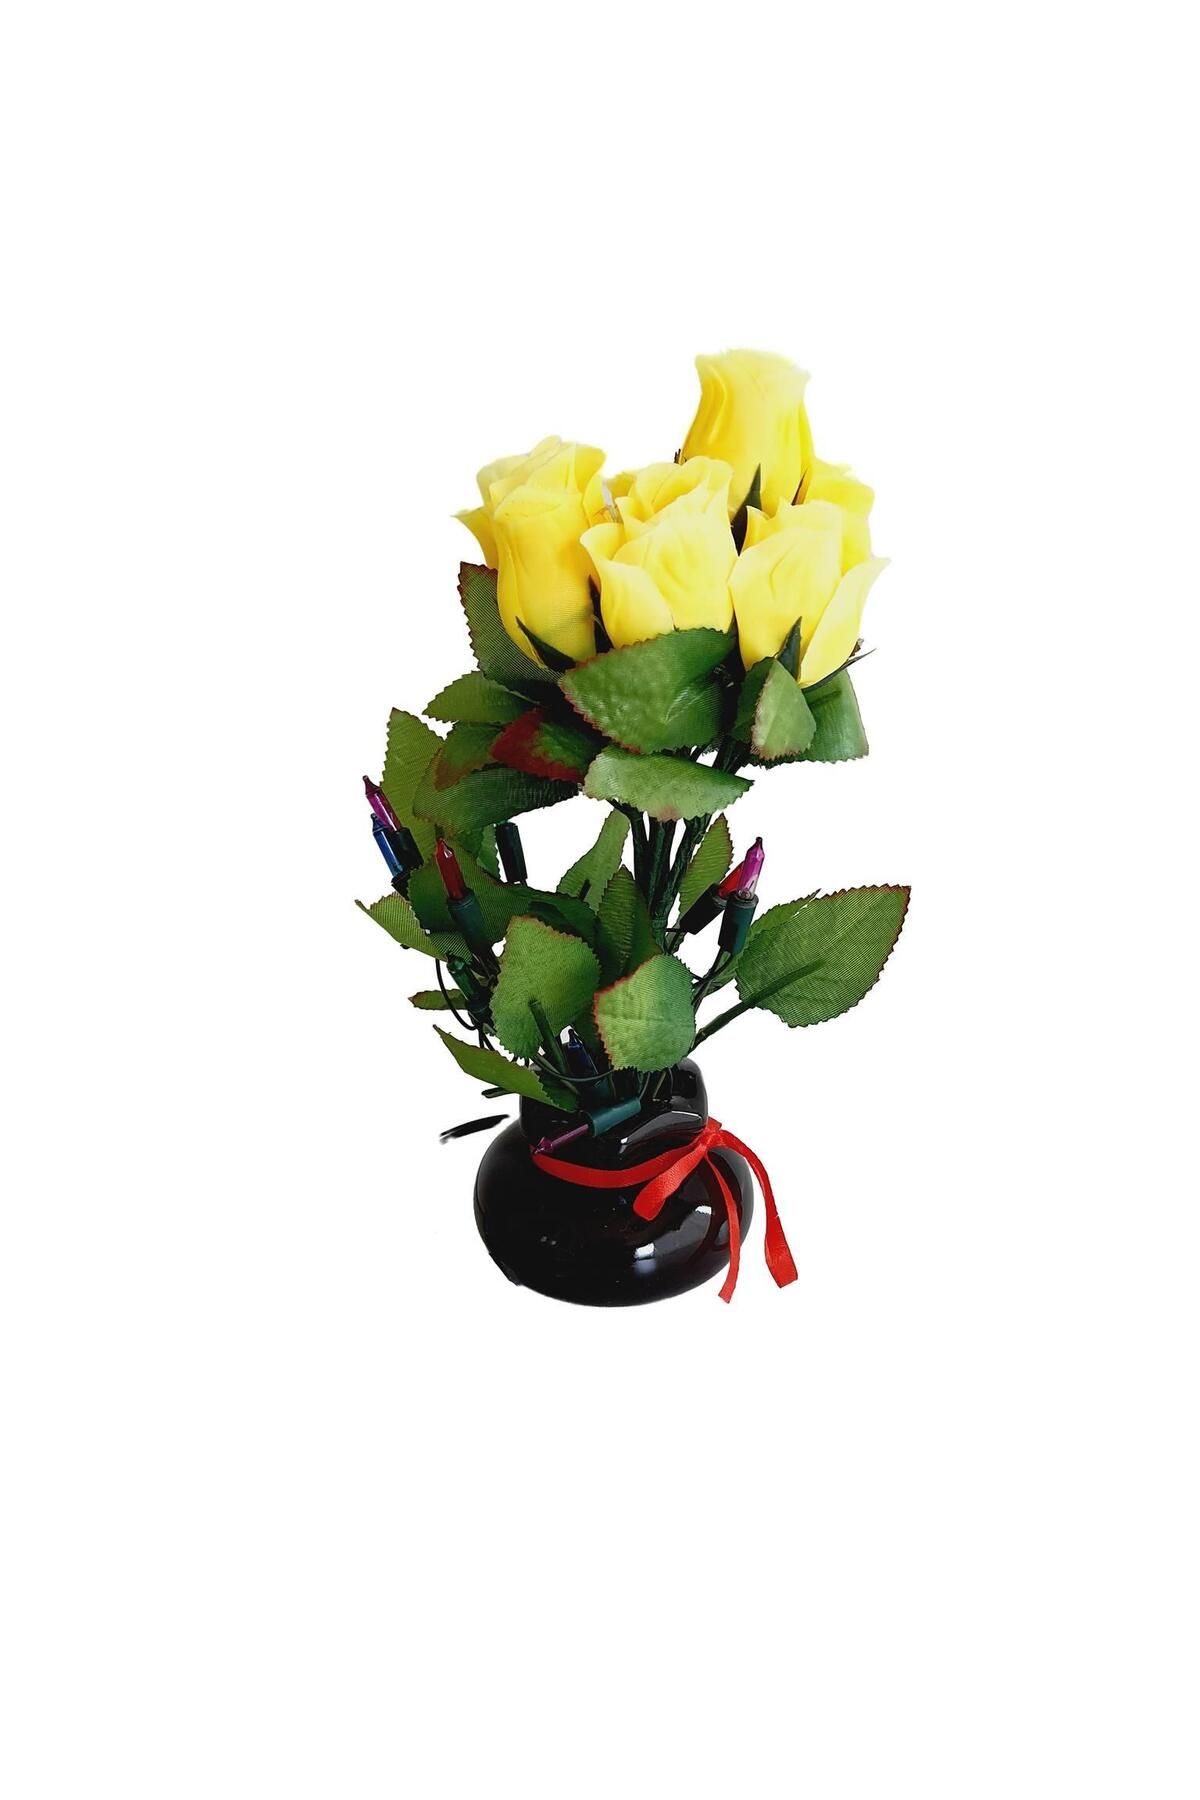 Hasyılmaz 90'lar Temalı Dekoratif Işıklı Yapay Çiçek 27cm (sarı Gül)